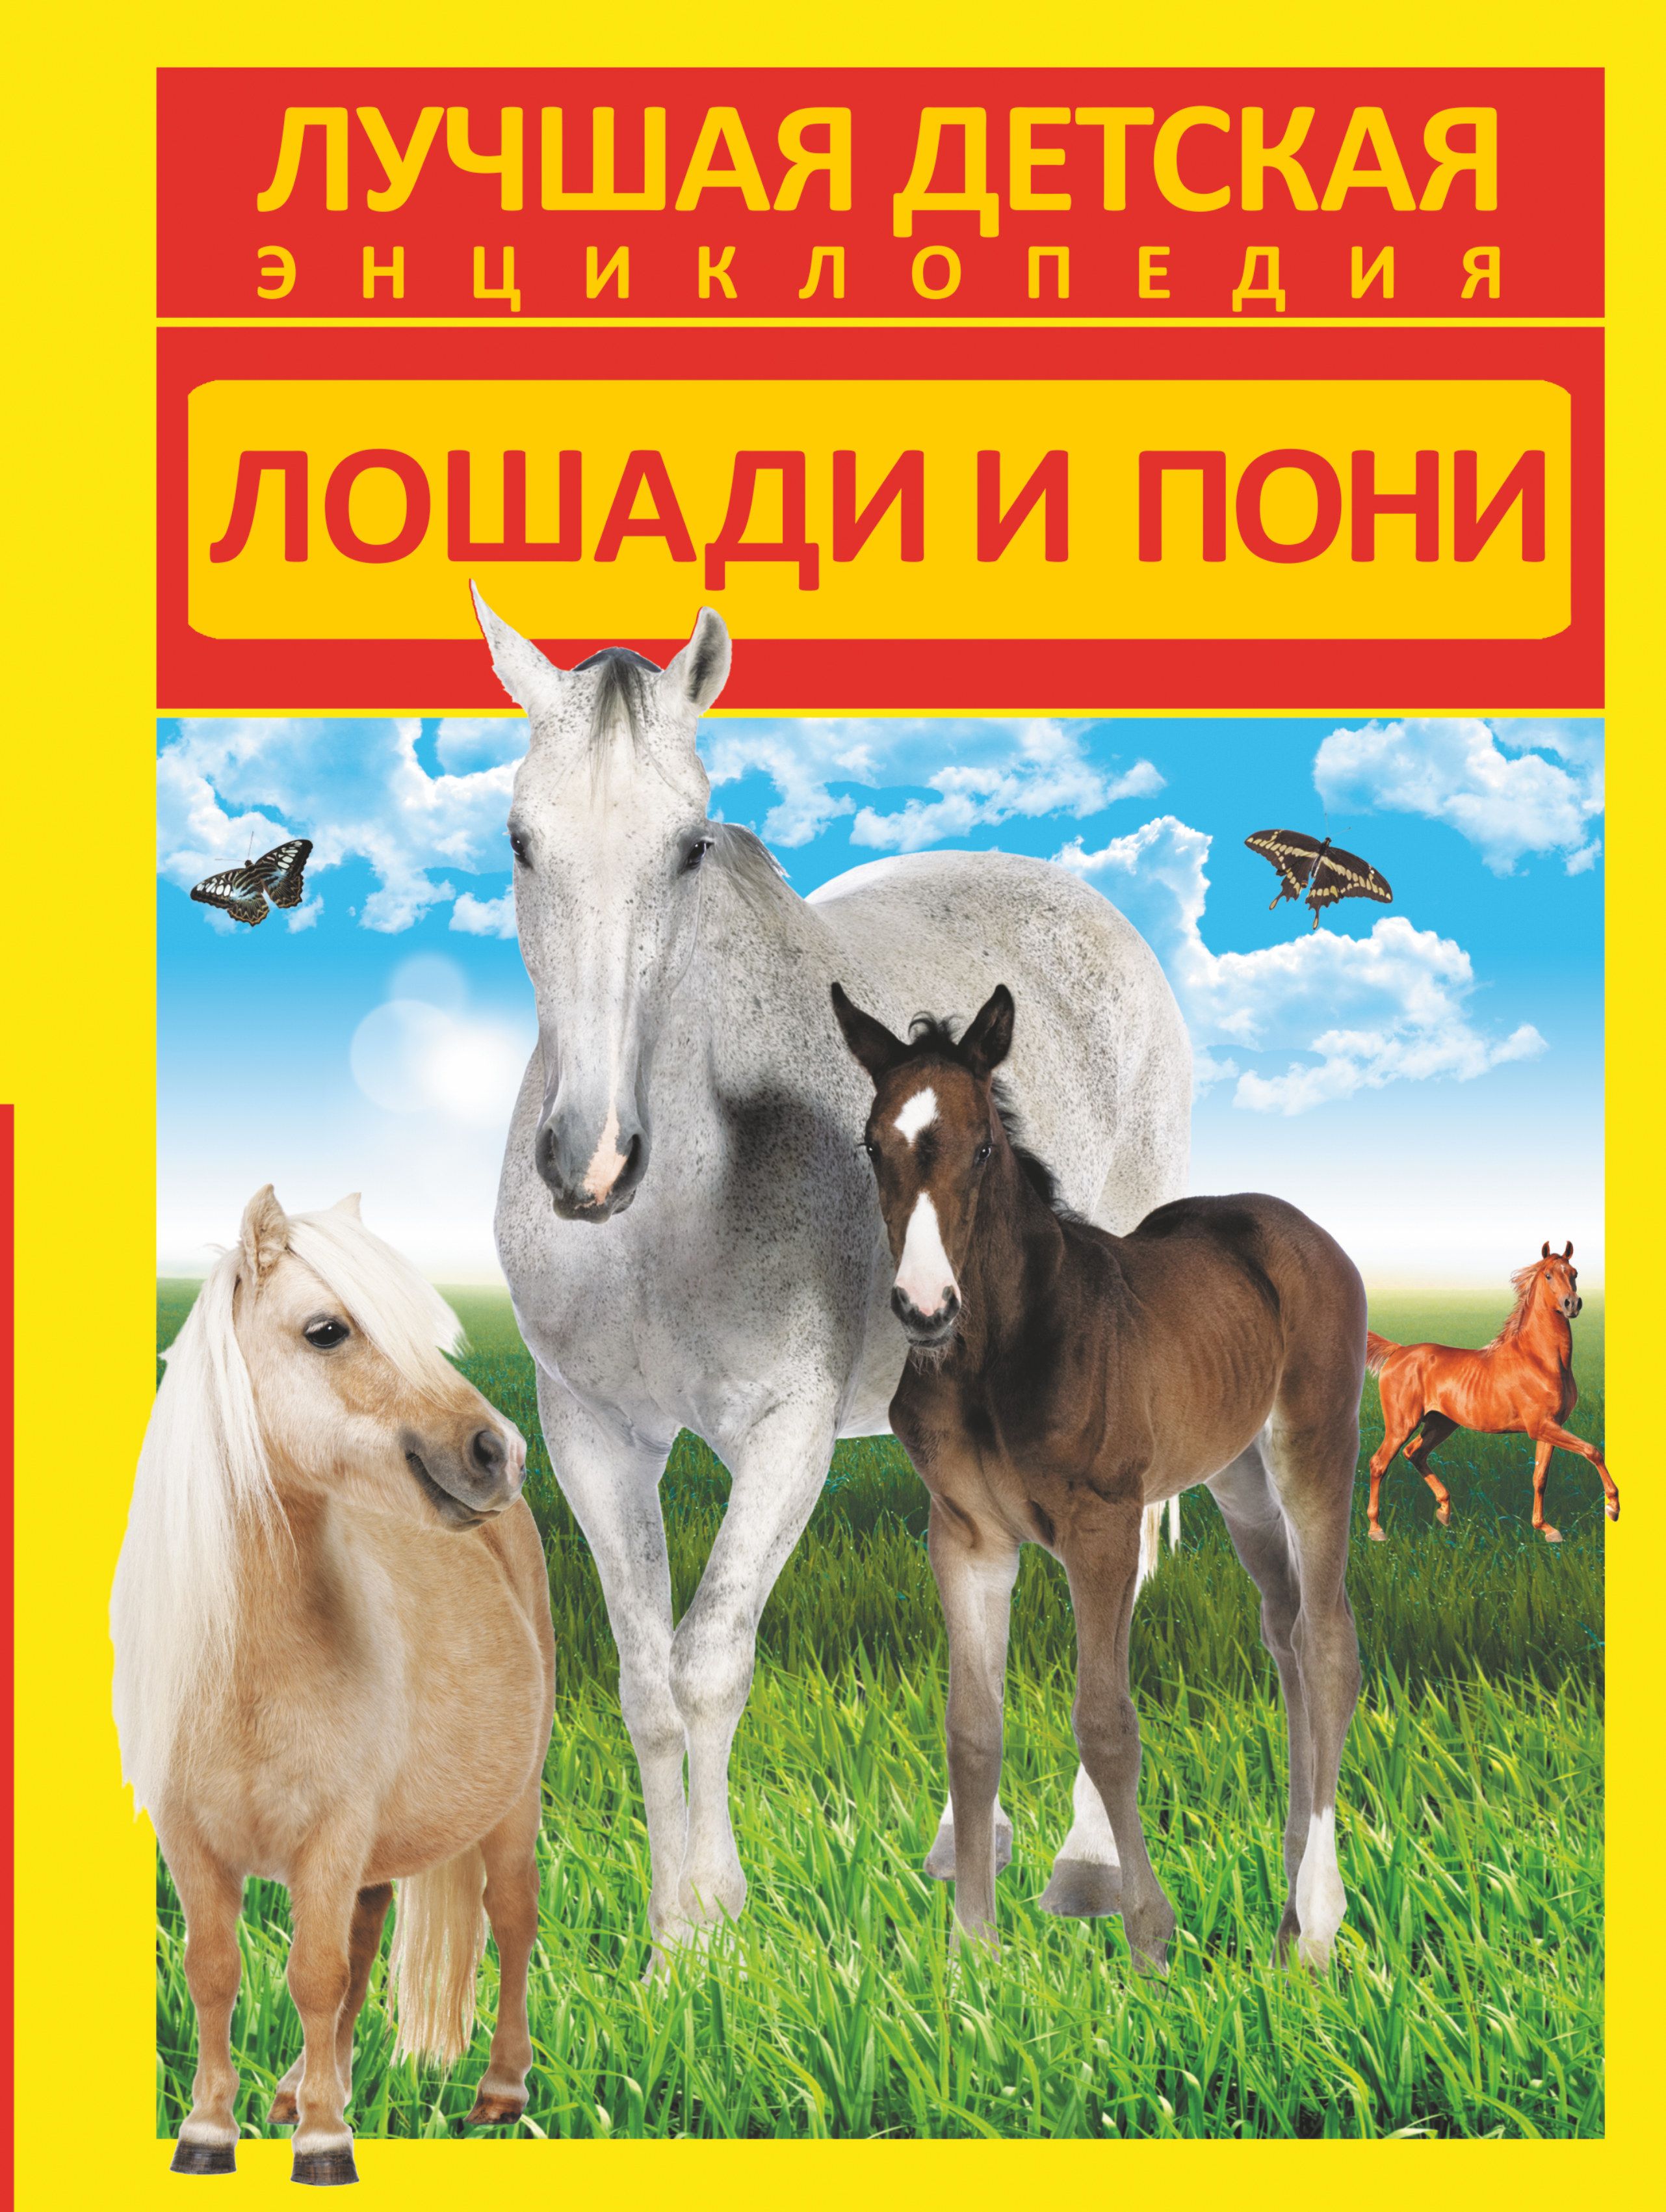 Купить книгу лошади. Энциклопедия лошади Росмэн детская и пони. Книги про лошадей. Лошади и пони. Книги о лошадях для детей.